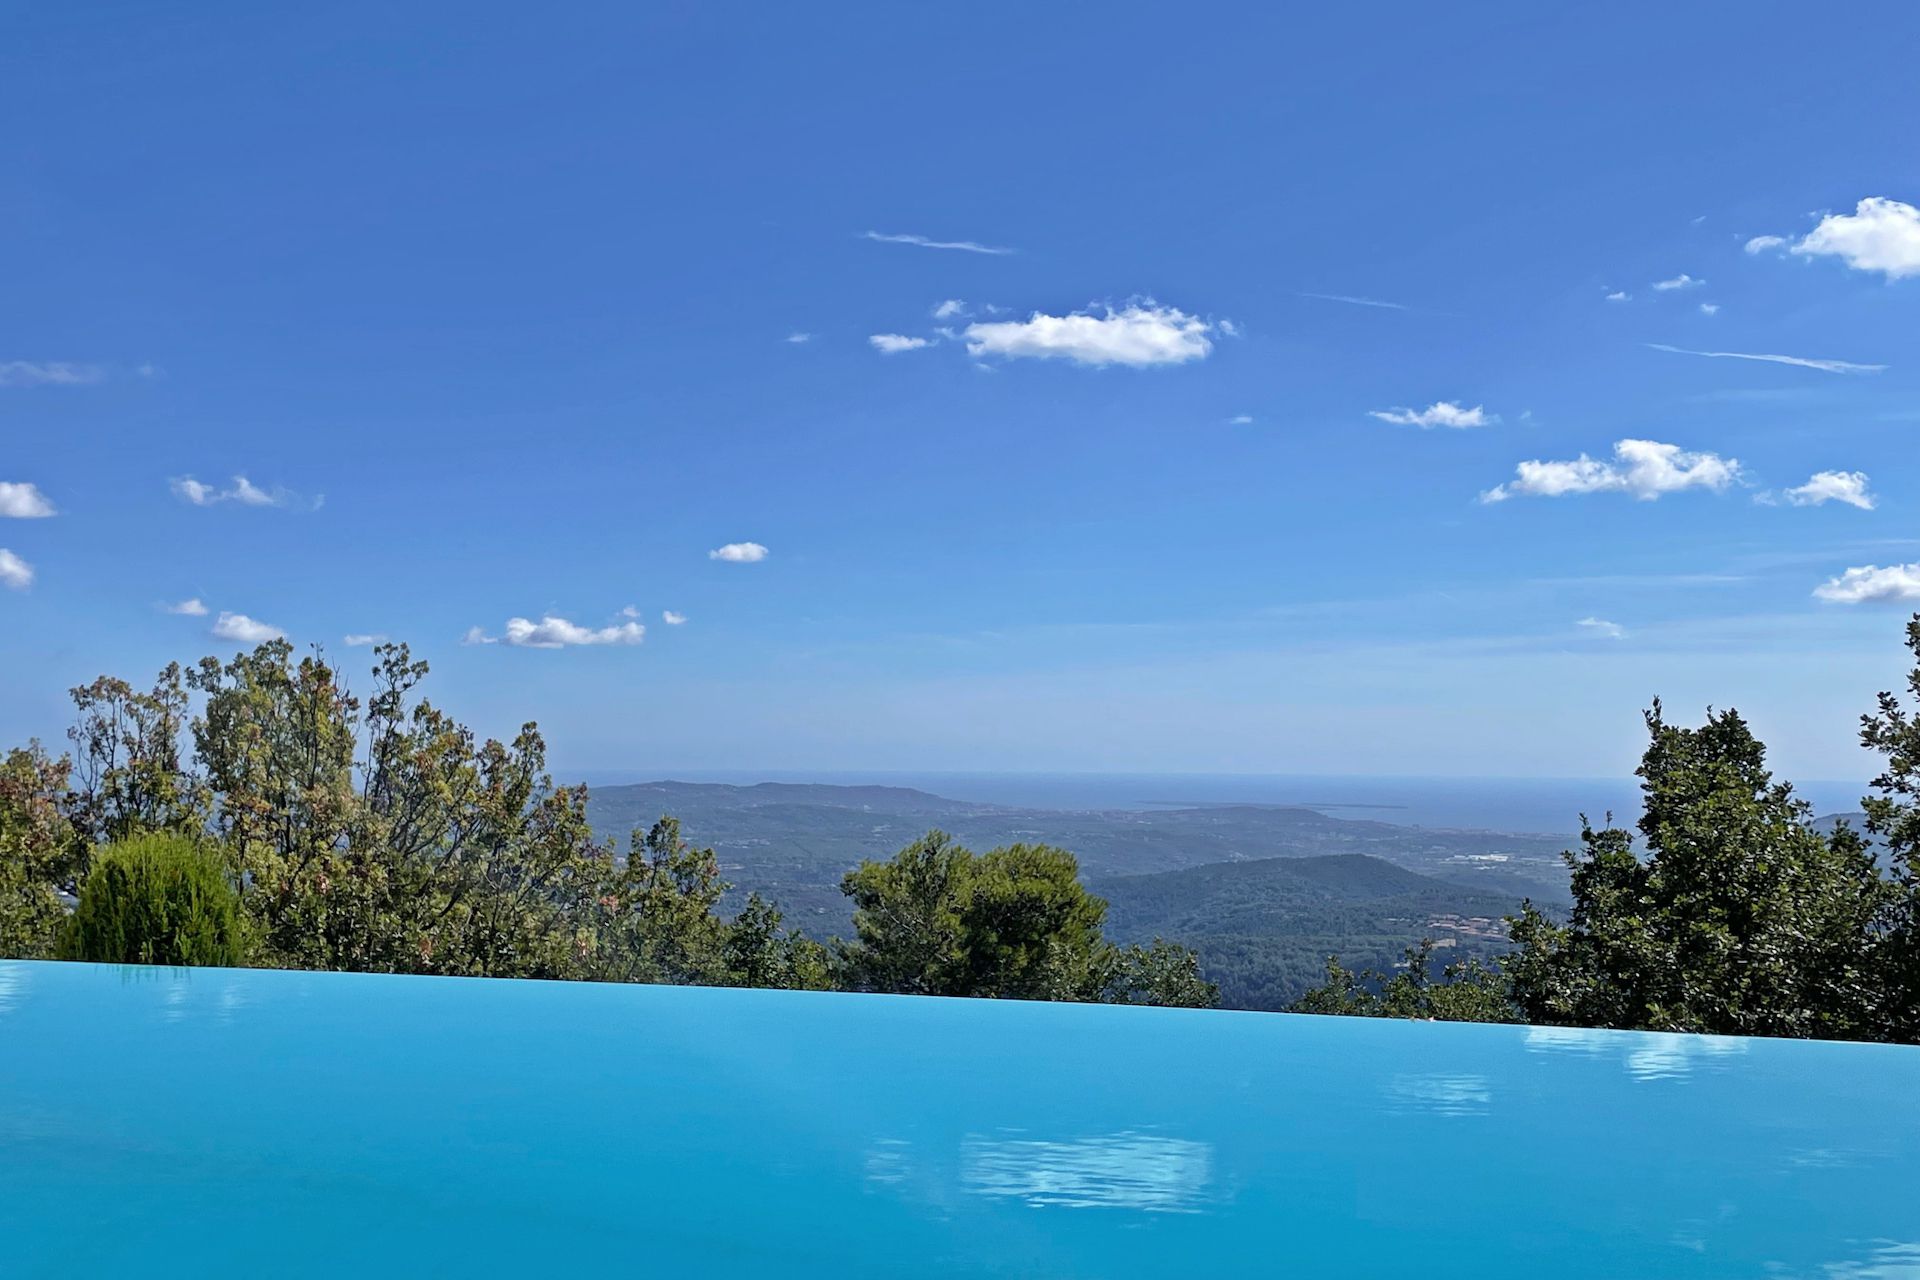 Méditerranée Location Villa with Private pool in Spéracèdes, Côte d'Azur